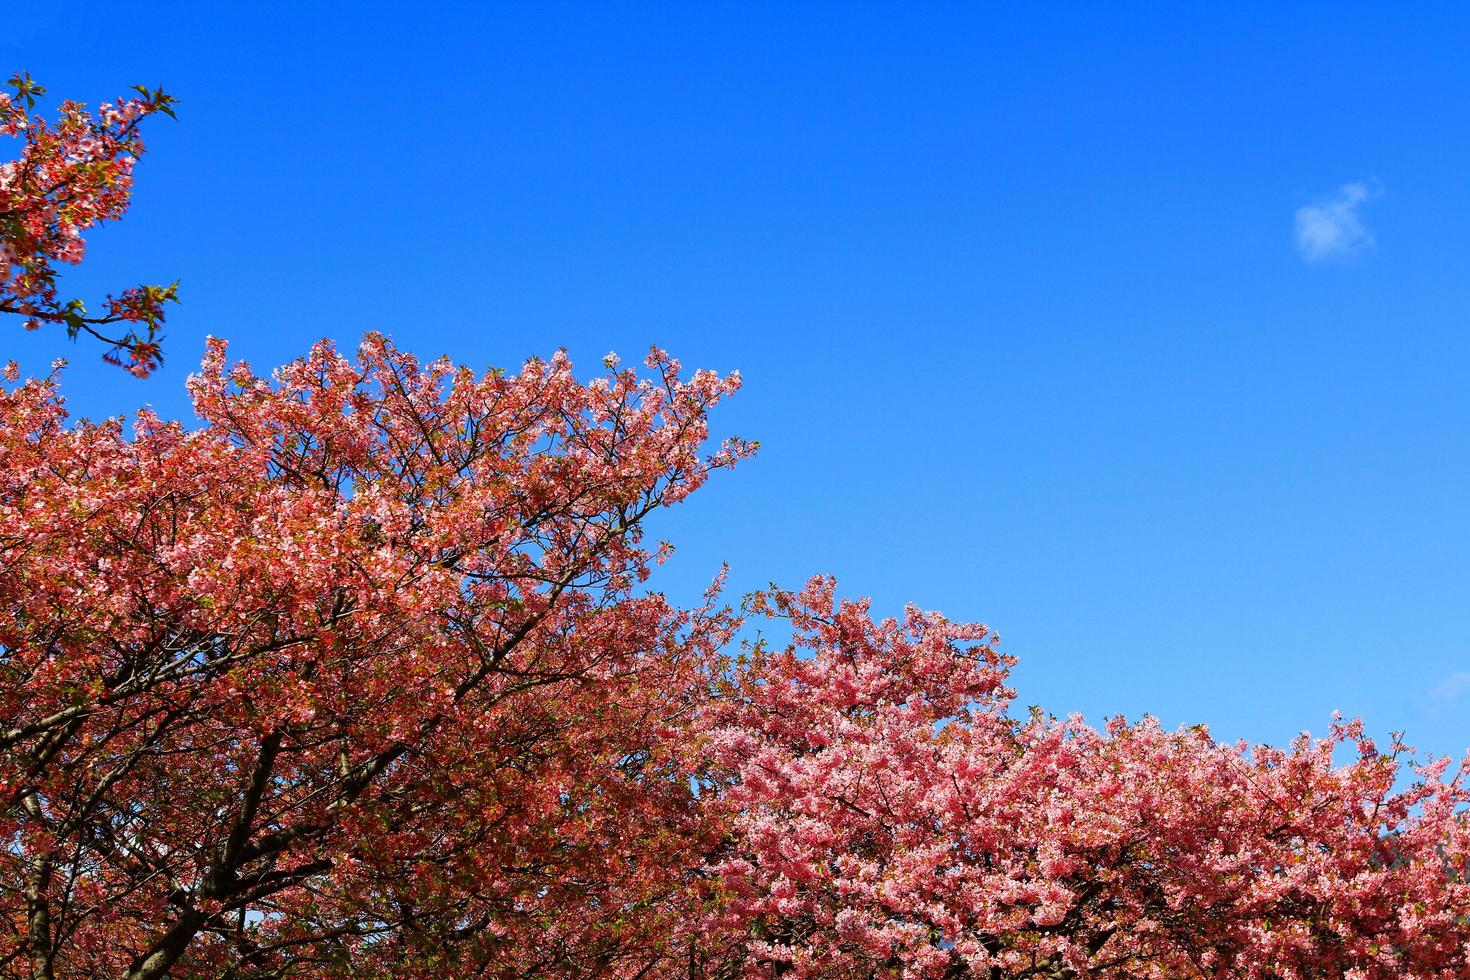 prachtige lente wilde himalaya vrolijke bloesem bloeien op bomen met zonlicht flare of lek en heldere blauwe hemelachtergrond in parktuin tokyo, japan. roze sakura-bloemstruiken met kopieerruimte. foto